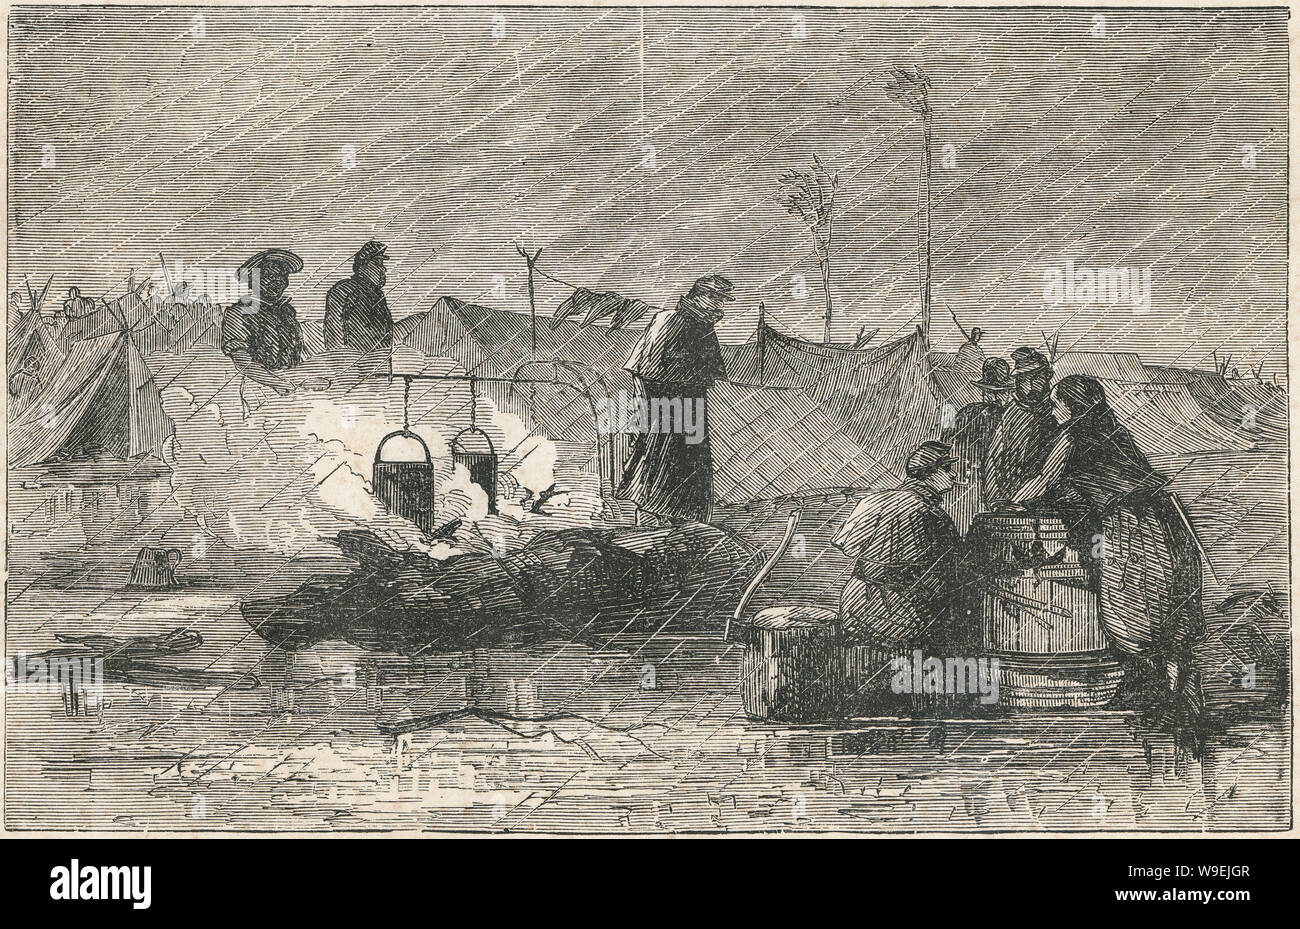 Antiguo grabado de 1873, "la vida del campamento" mostrando una unión de los soldados de la Guerra Civil americana en la lluvia. Fuente: Grabado original Foto de stock